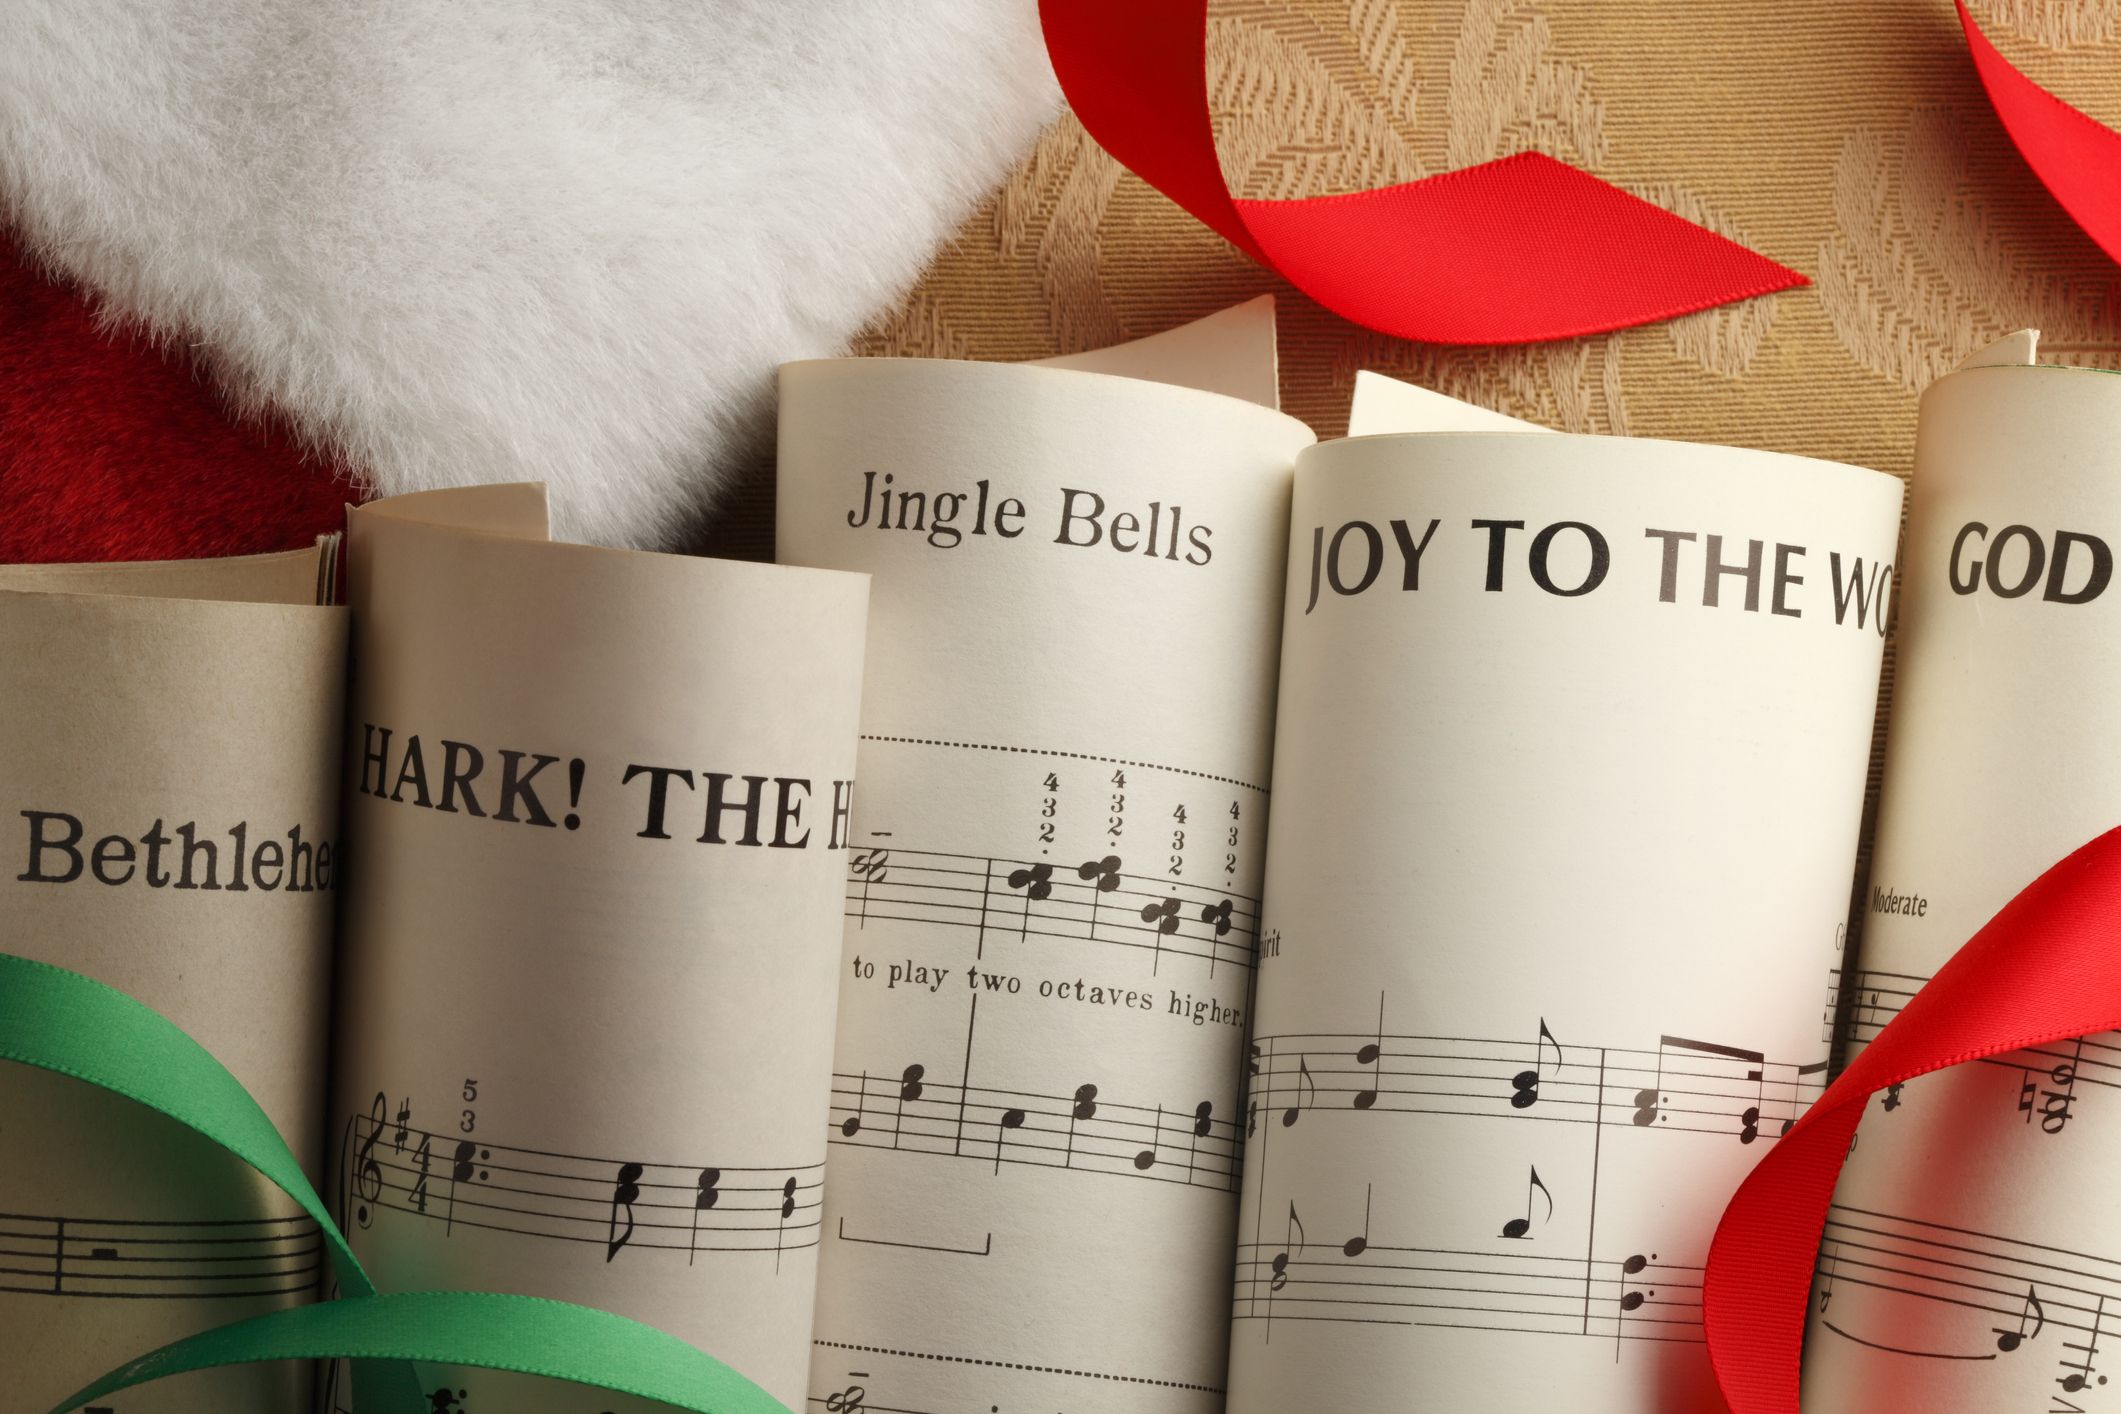 Nhạc Thánh Ca Giáng Sinh: Lời nhạc Thánh Ca với sức mạnh và ý nghĩa tuyệt vời của nó sẽ giúp bạn tìm thấy sự yên bình và ấm áp trong lòng. Hãy cùng lắng nghe những giai điệu cao trào, tuyệt vời và sâu sắc từ các bản nhạc Thánh Ca Giáng Sinh.